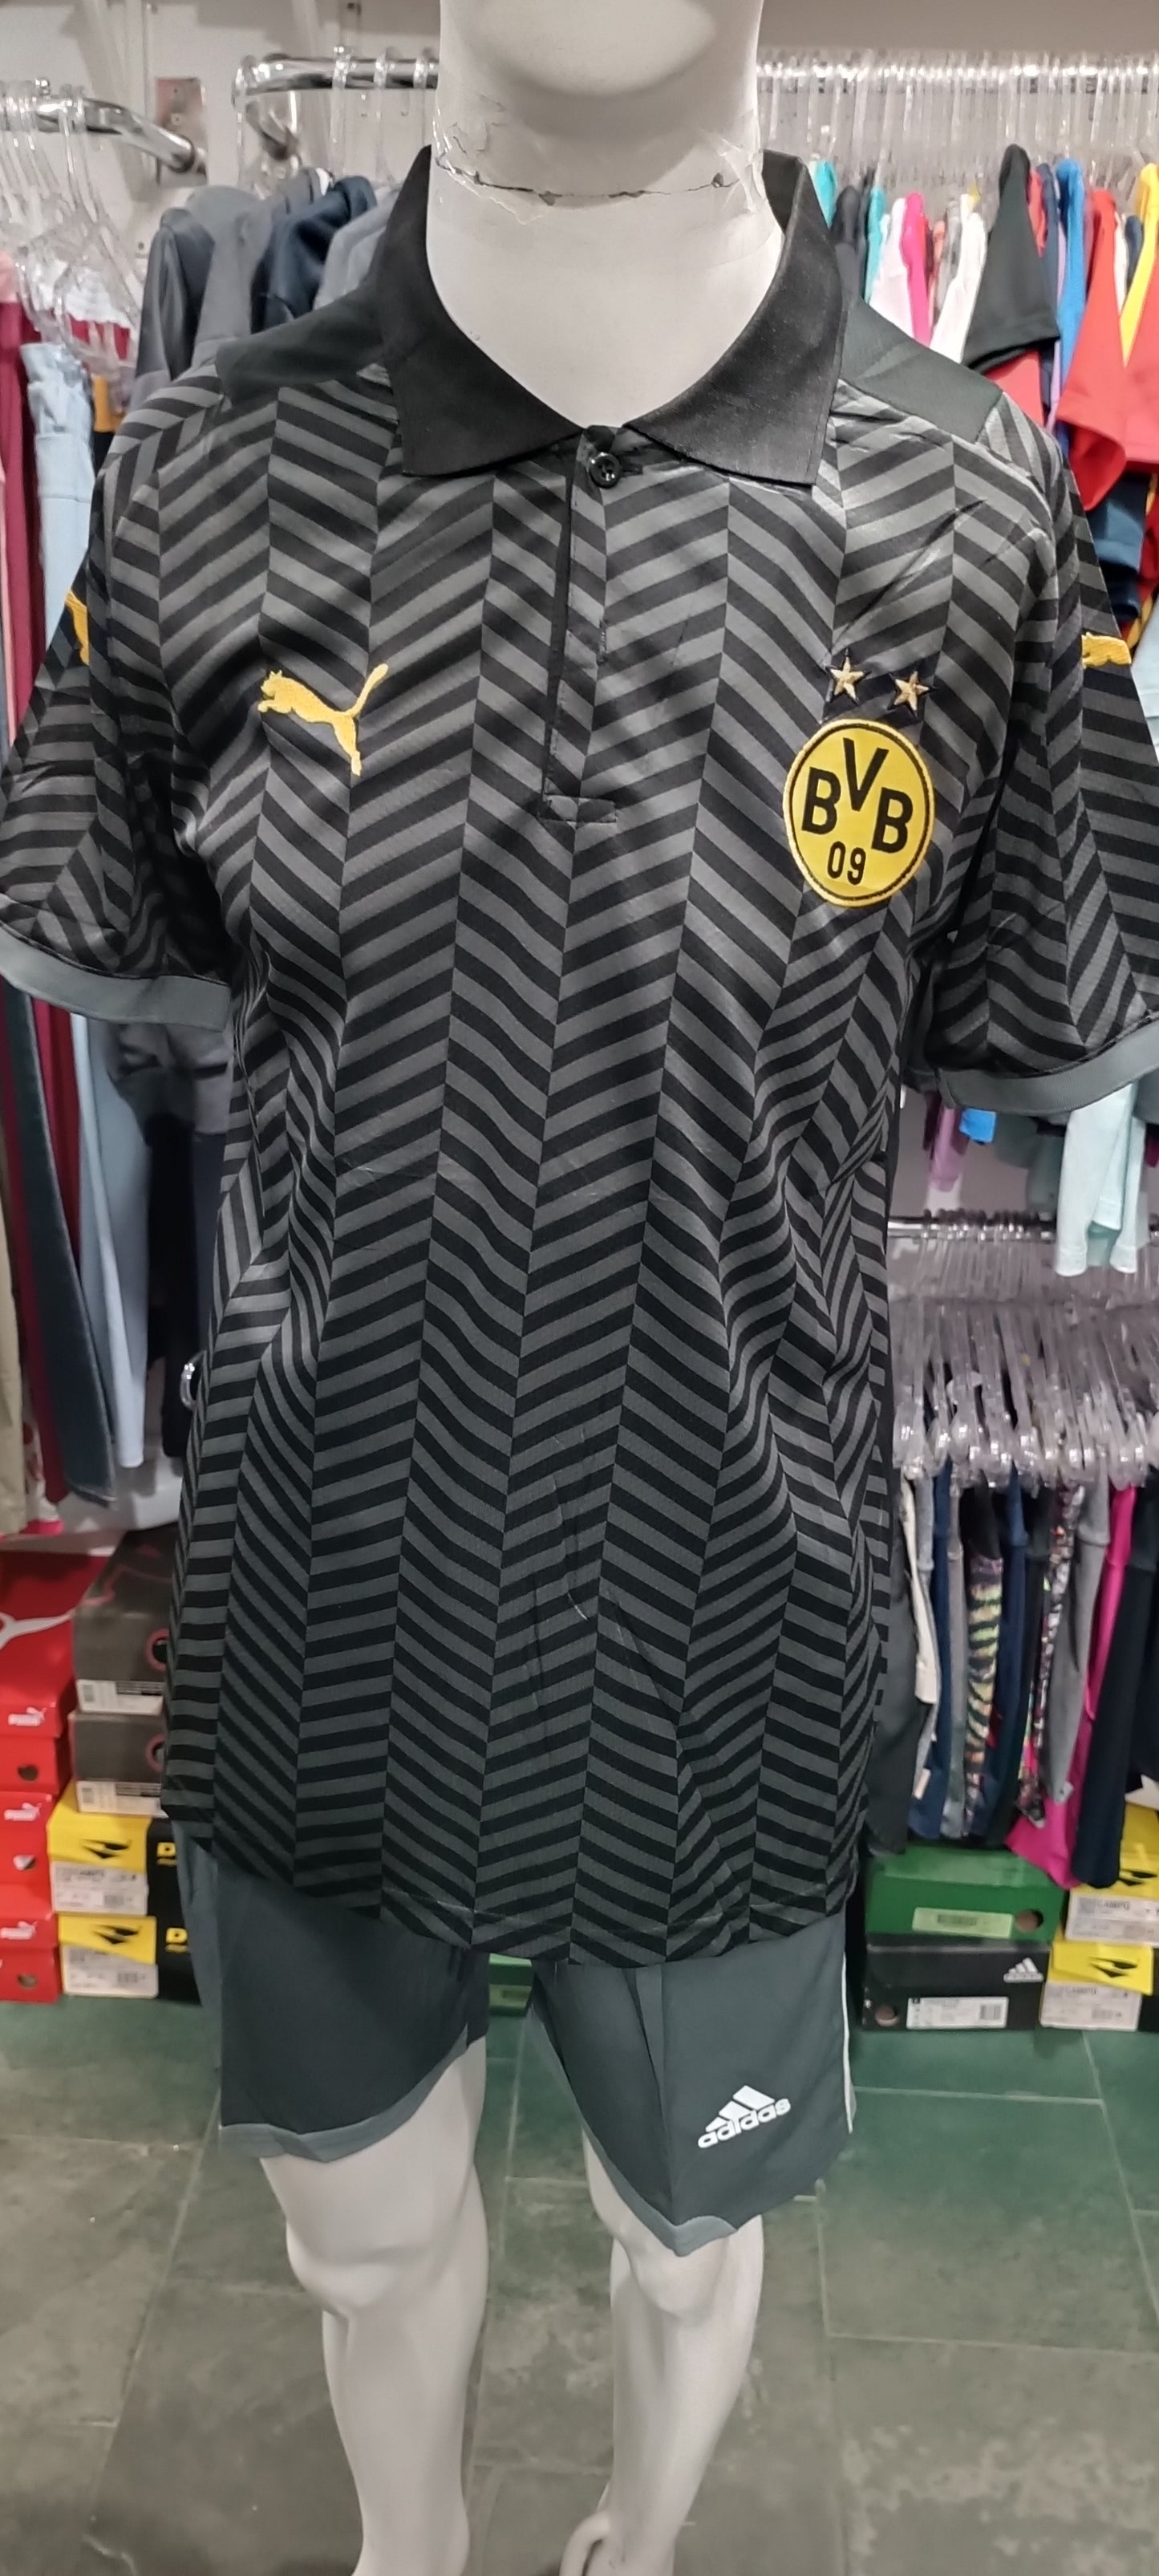 Camisa Borussia